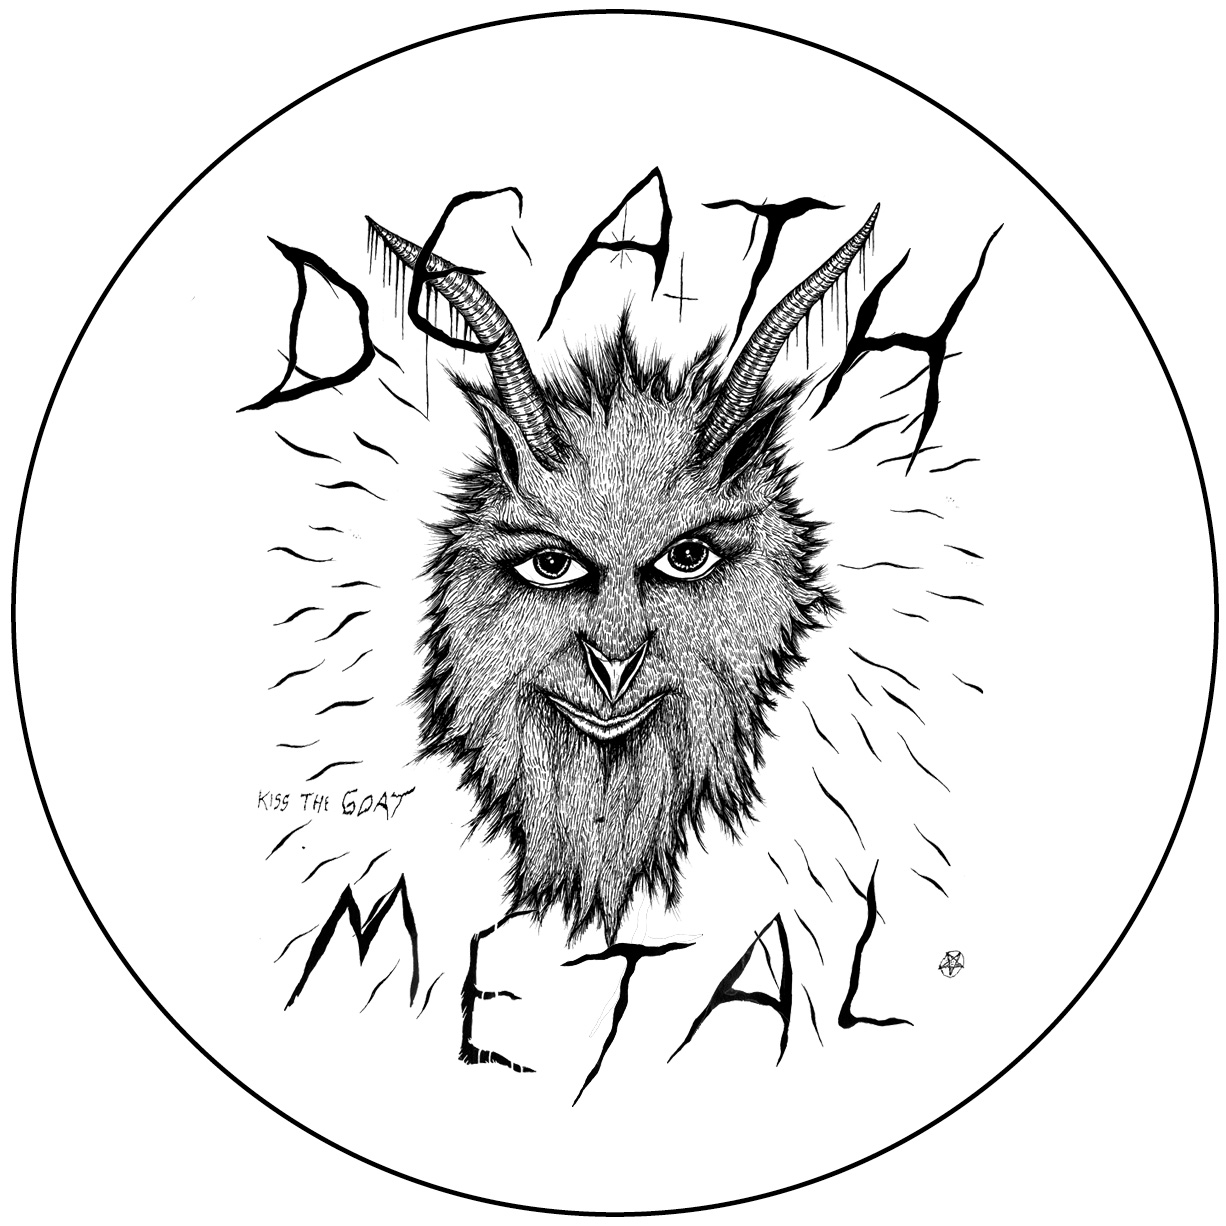 DEATH BY METAL by galeria de muerte: DEATH METAL Badge (76mm)